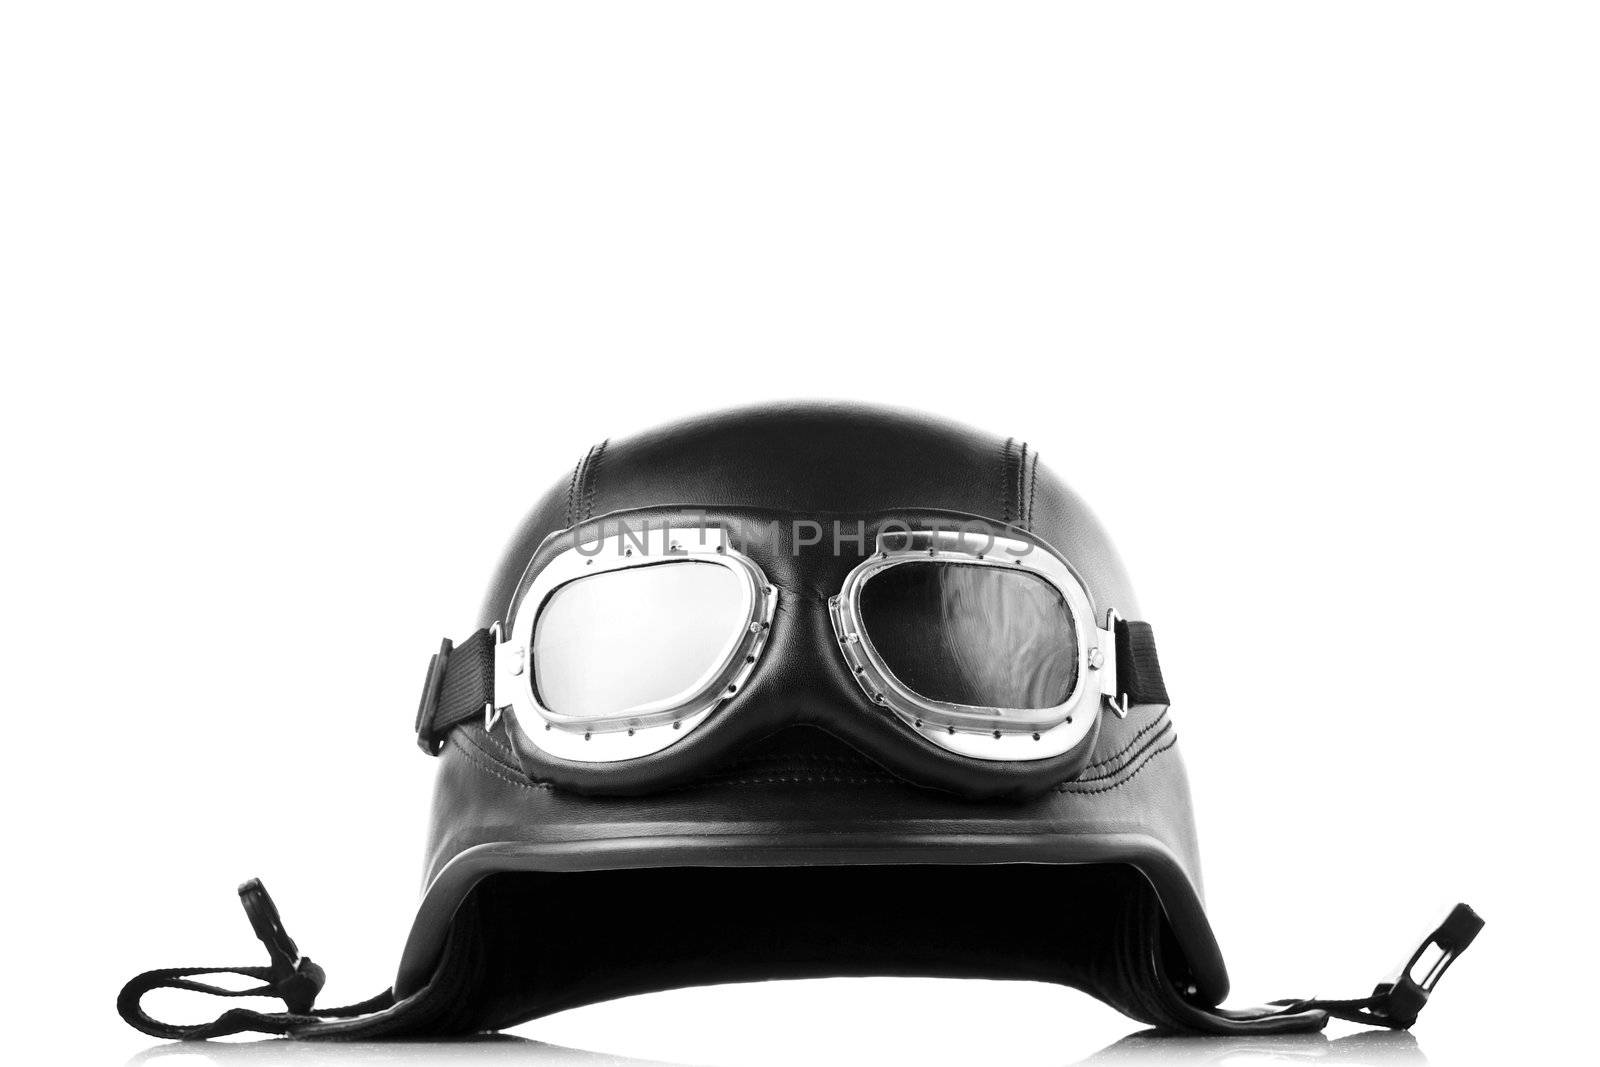 US army style motorcycle helmet by kokimk